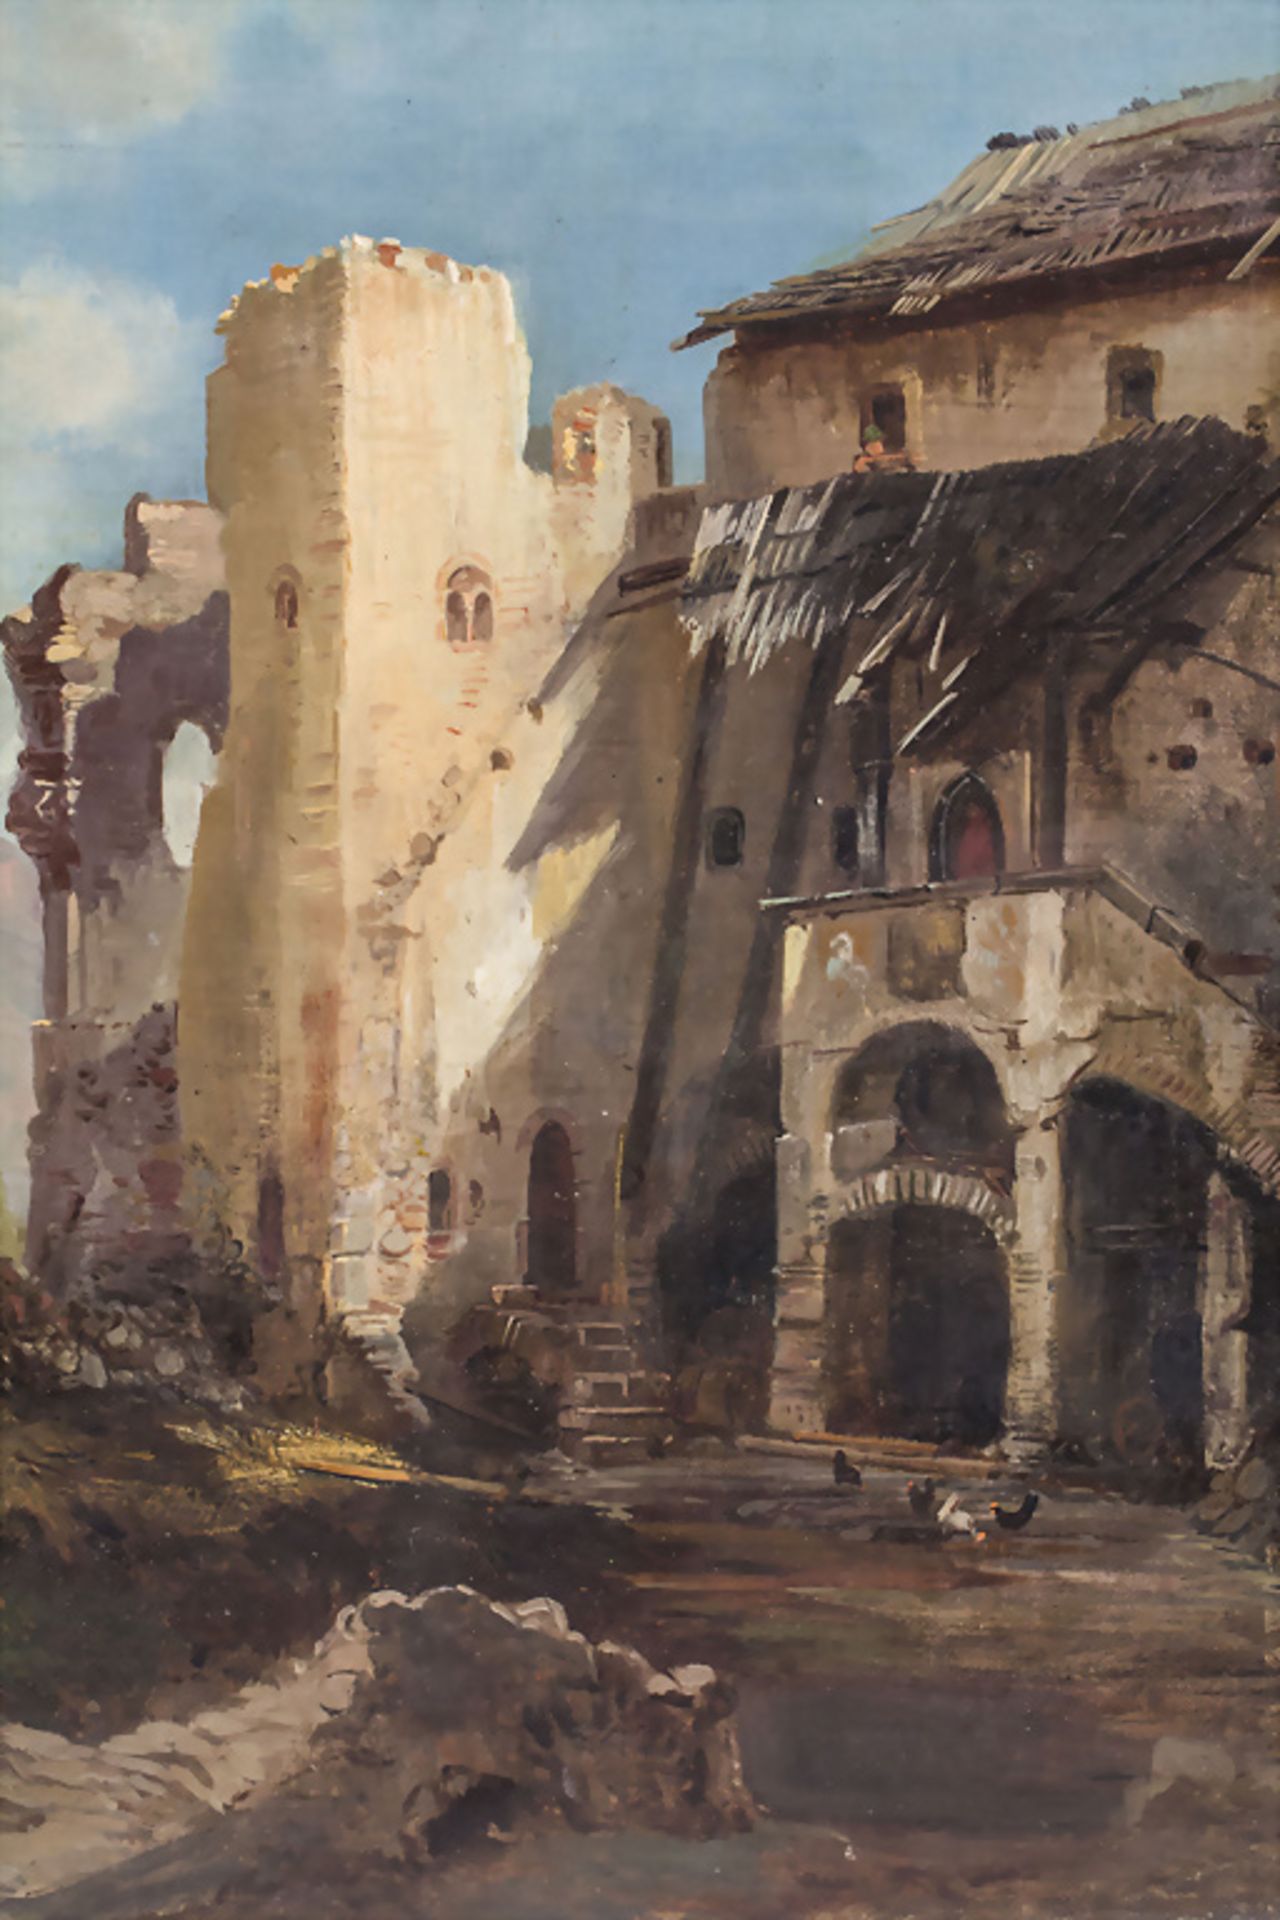 Unbekannter Künstler des 18./19. Jh., 'Ruine einer Klosteranlage' / 'Ruins of a monastery'